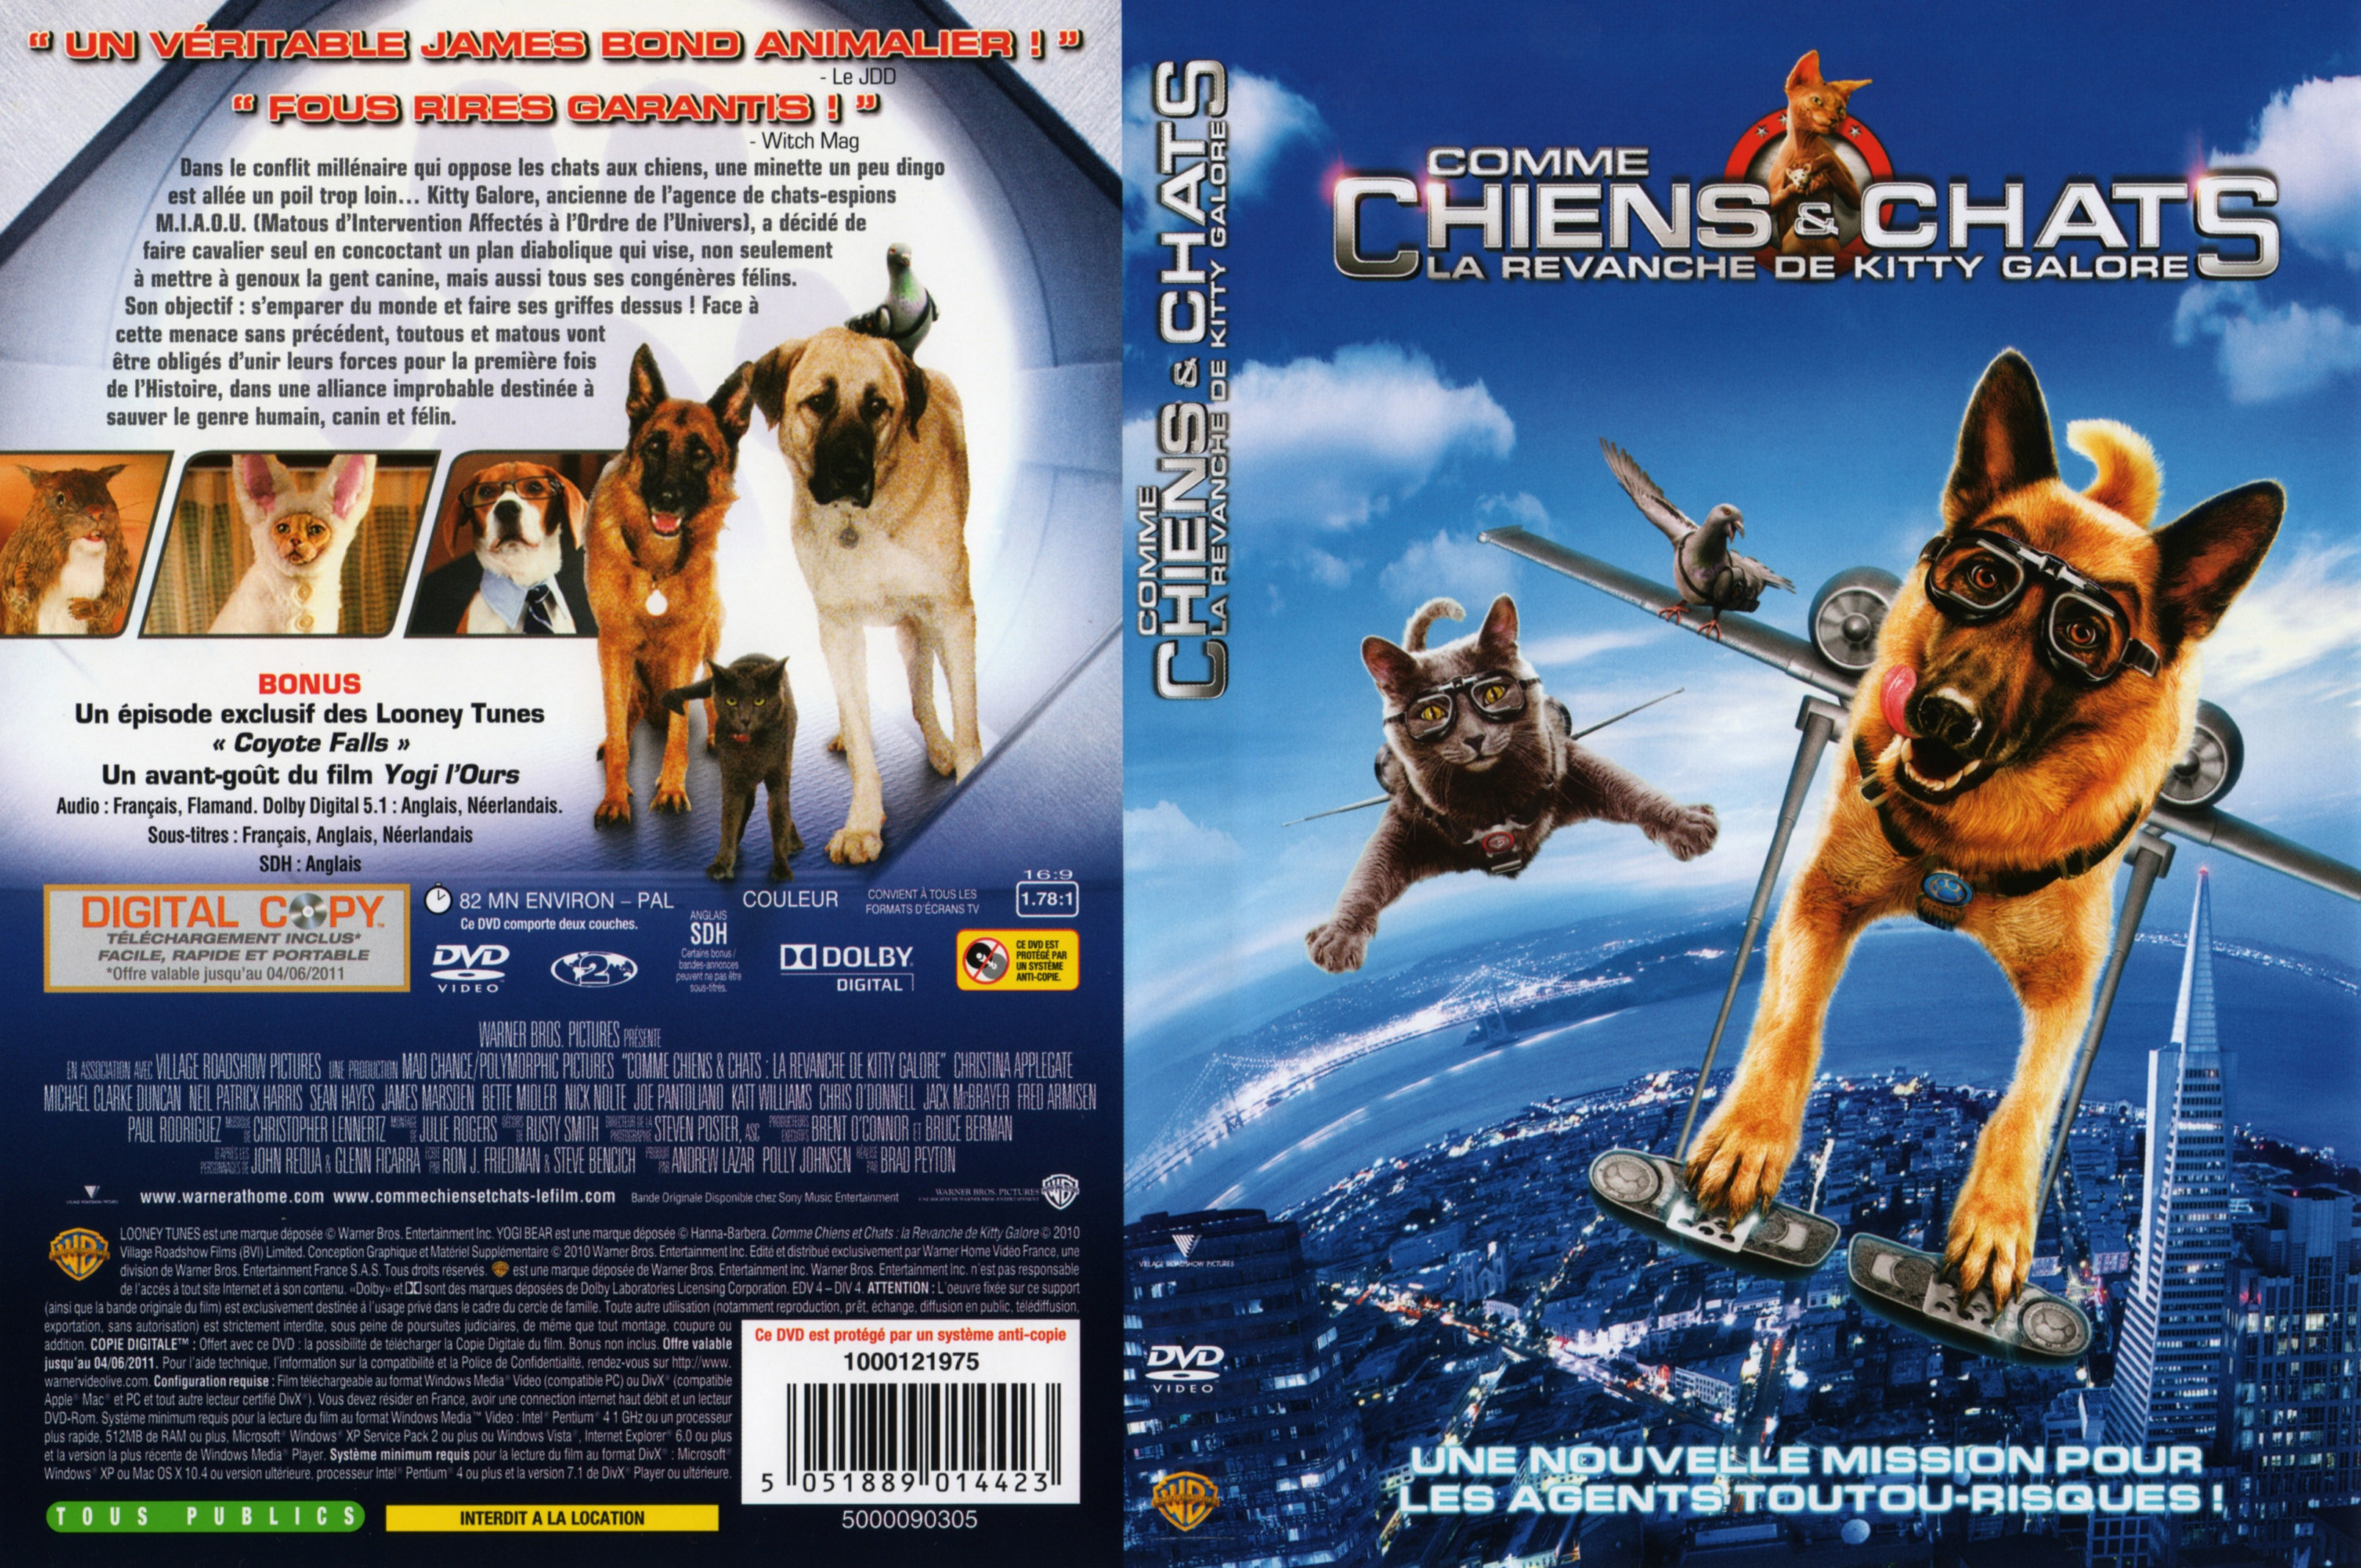 Jaquette DVD Comme chiens et chats - La Revanche De Kitty Galore v2